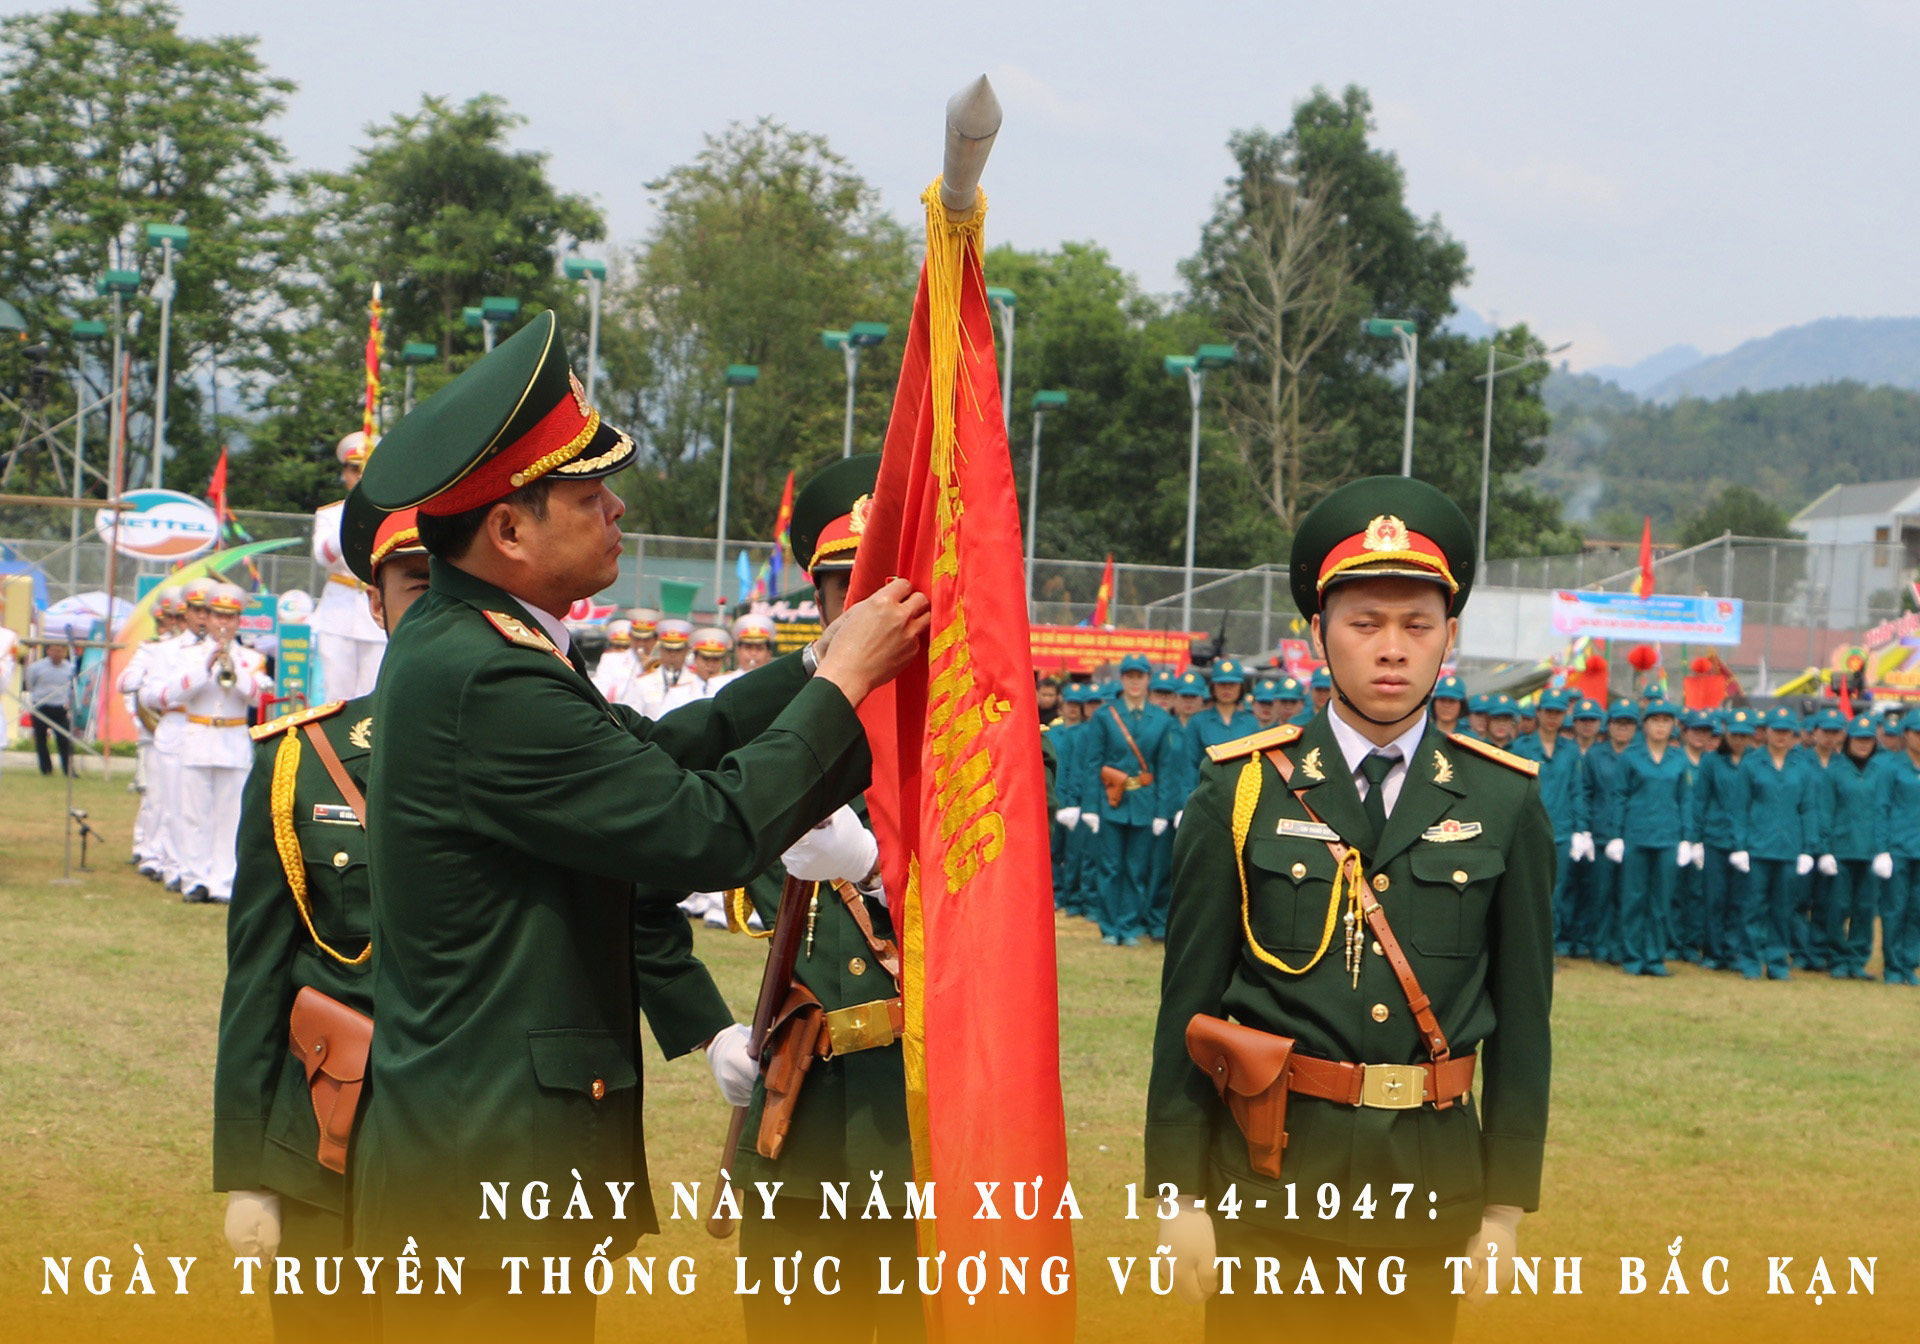 Lực lượng vũ trang tại Việt Nam đã phát triển vượt bậc trong những năm qua. Những đơn vị quân đội được trang bị tốt và đang sẵn sàng để bảo vệ đất nước và nhân dân. Nếu bạn là một fan hâm mộ hoặc muốn tìm hiểu thêm về công tác quân sự, hãy nhấn vào hình ảnh để xem những hoạt động của lực lượng vũ trang tại Việt Nam.